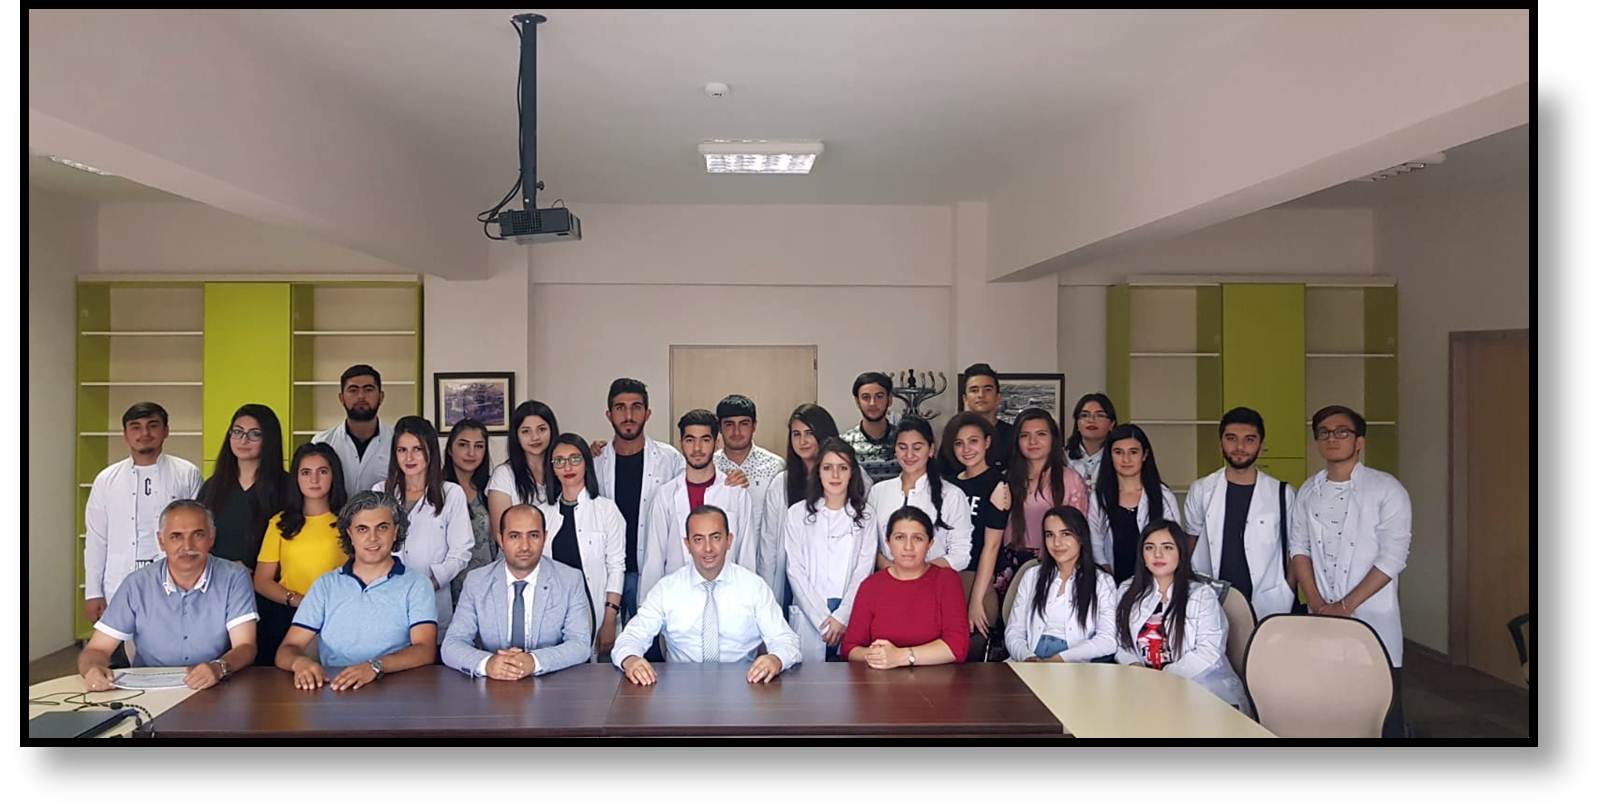 erzincan binali yildirim universitesi find and study 64 - Erzincan Binali Yıldırım University